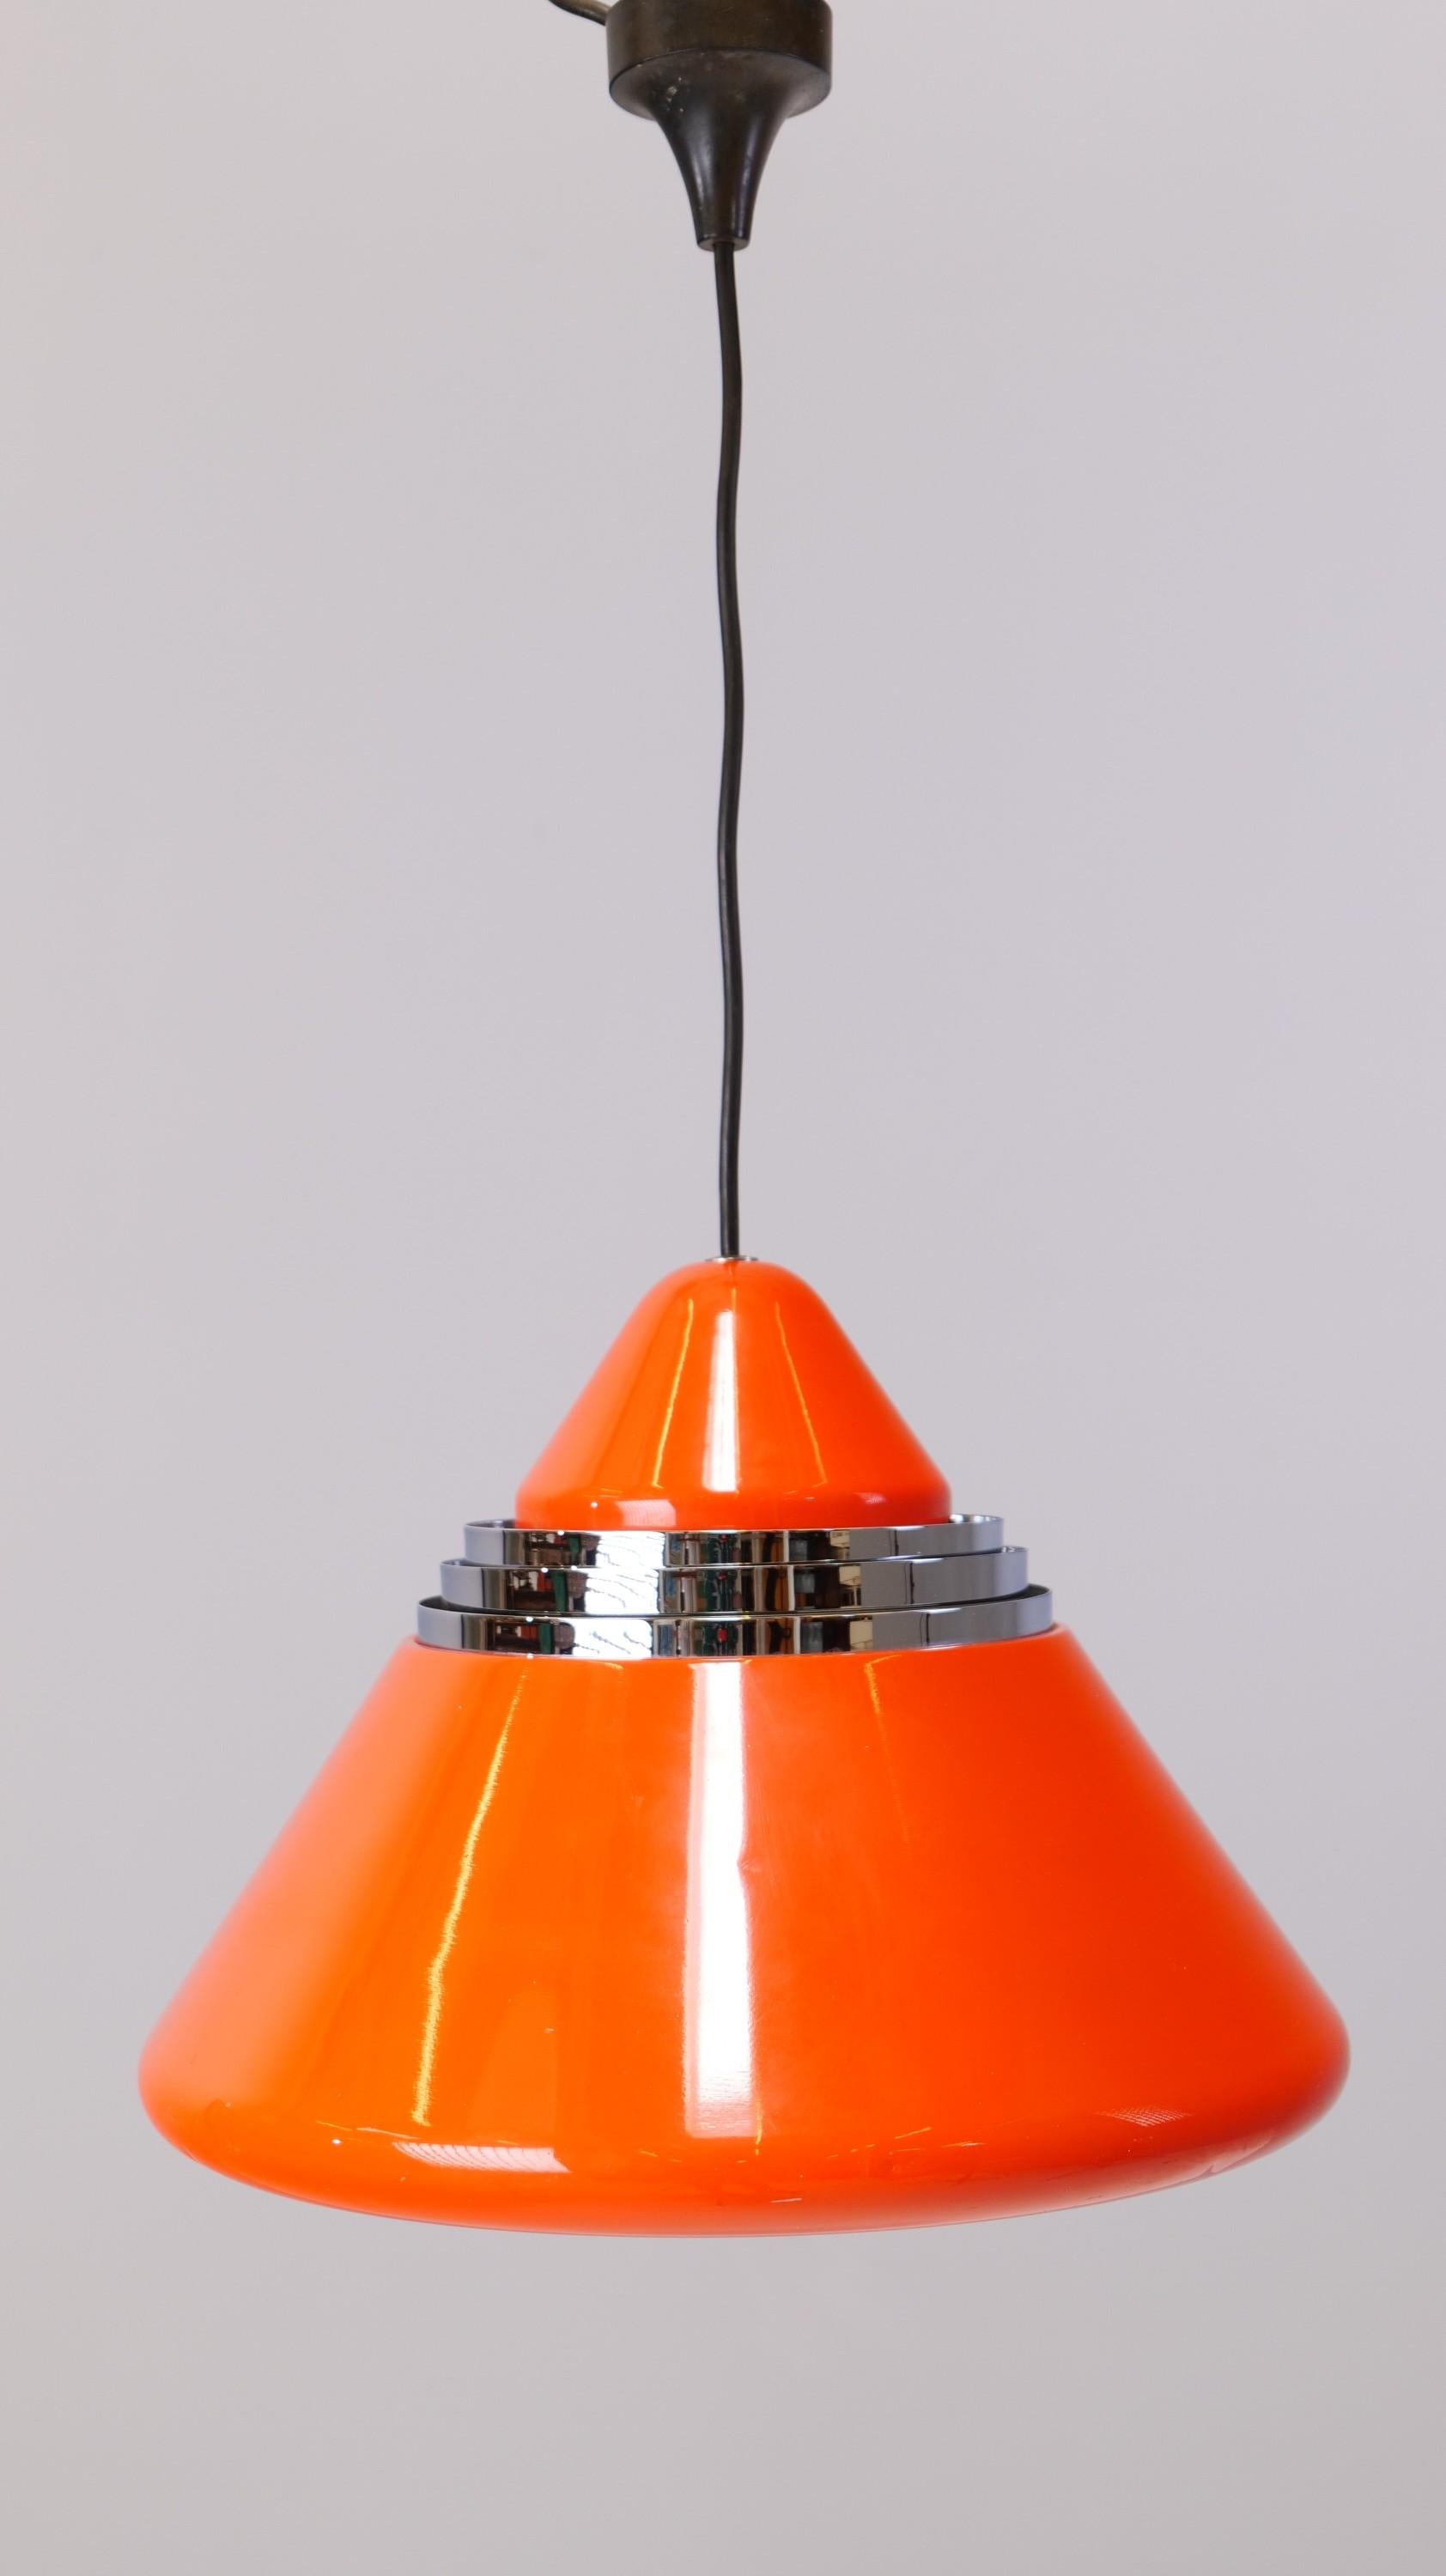 Très rare lampe OVNI de la société Staff - Allemagne.
Design/One par Alfred Kalthoff pour le personnel
Lampe en métal avec anneaux chromés
Années 1970 - Allemagne

Dimensions :
Jusqu'à 120 cm de longueur
Matériau :
Métal, chrome.